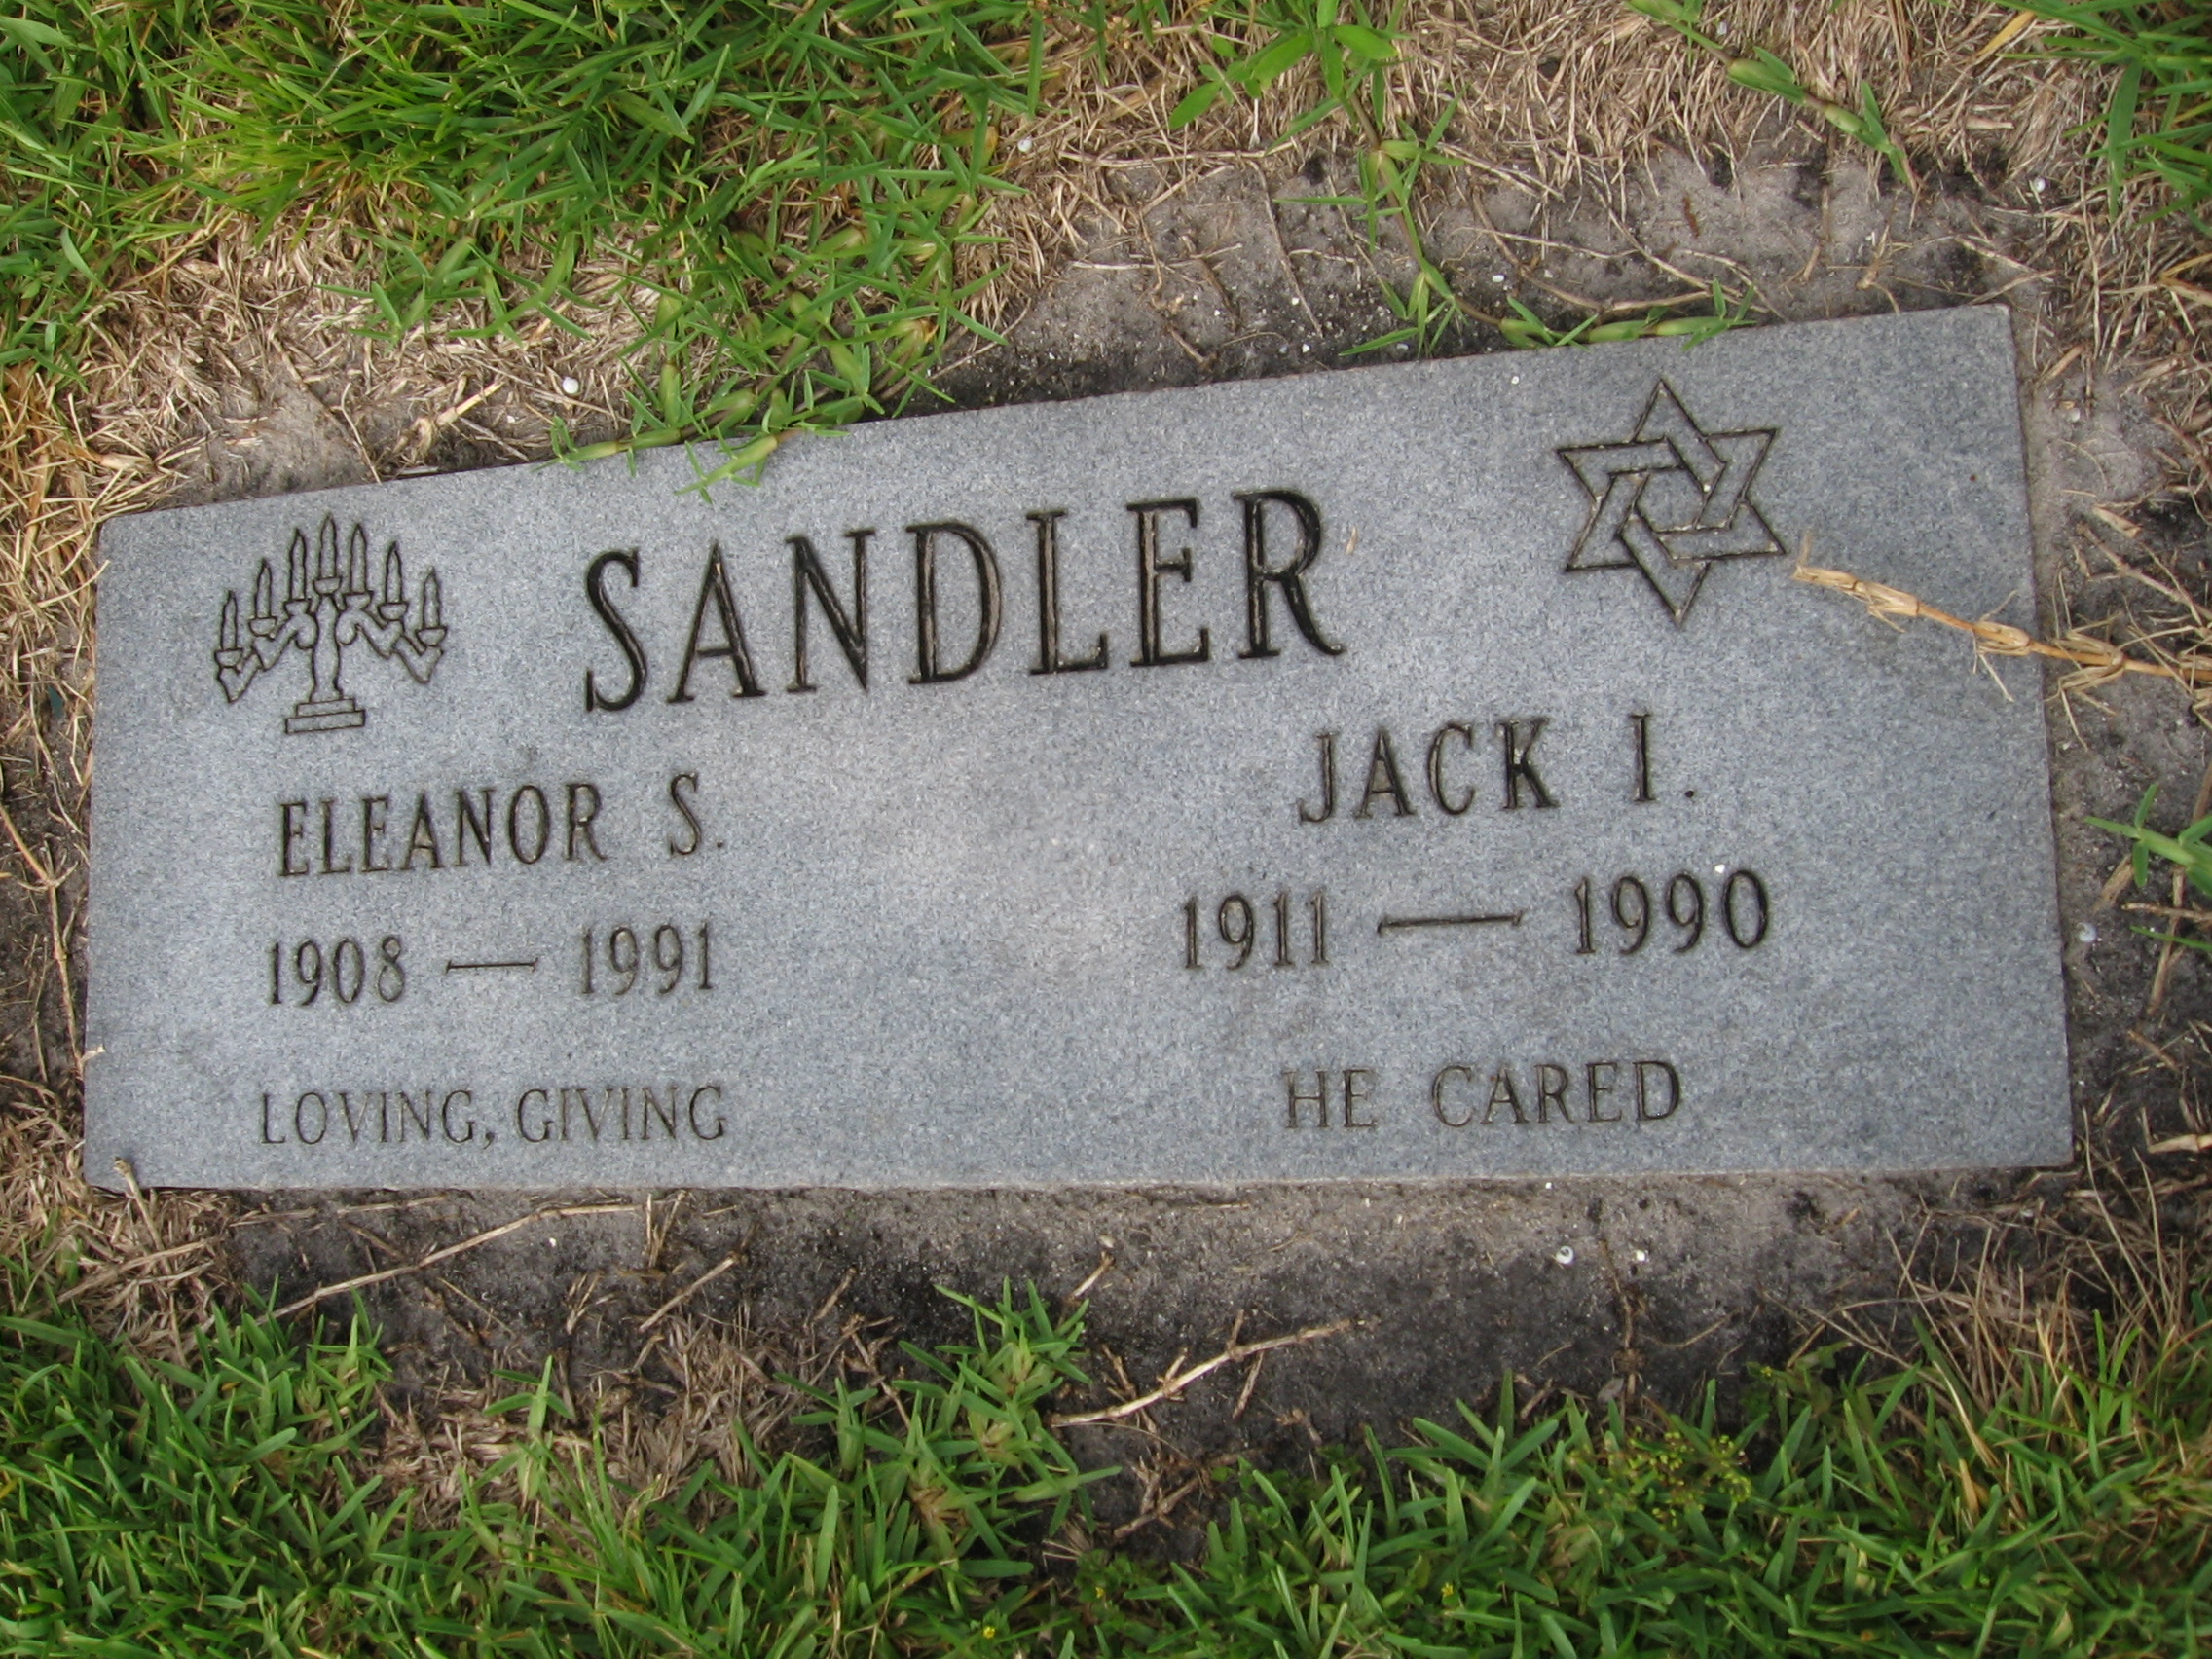 Jack I Sandler